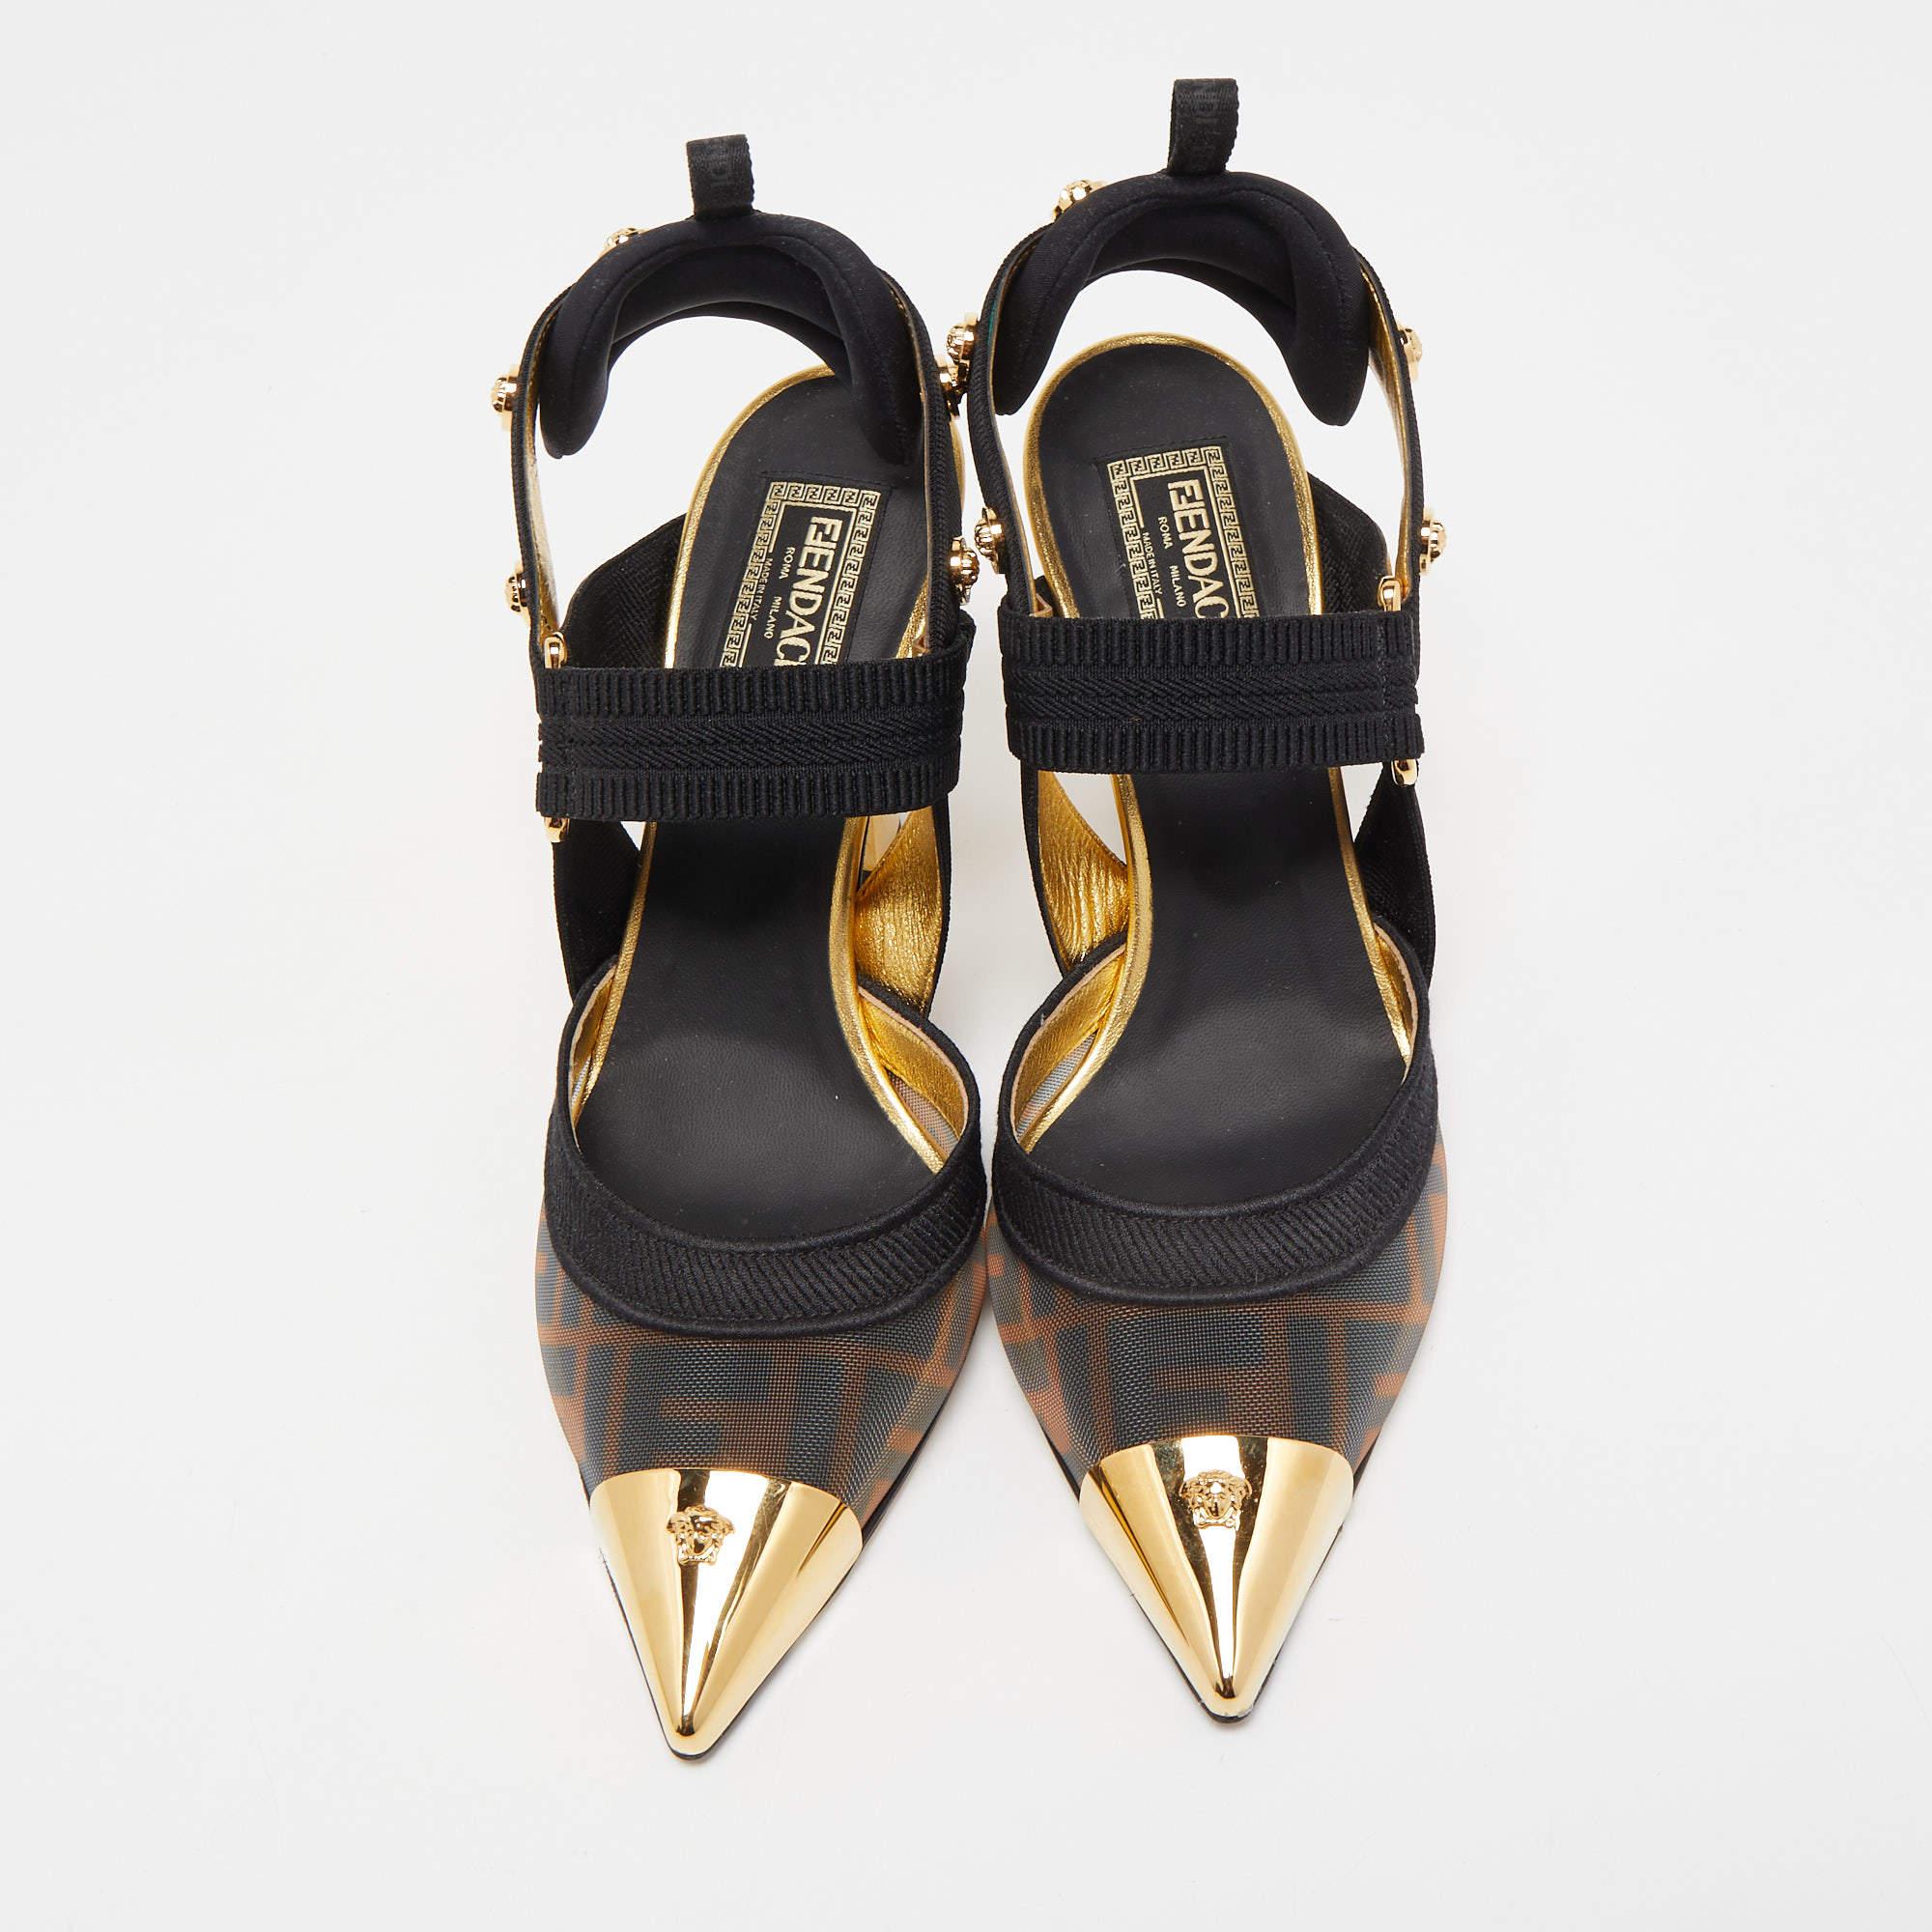 Les escarpins Fendi x Versace Icone sont une fusion exquise de deux marques de luxe emblématiques. Ces escarpins présentent une étonnante combinaison de maille et de tissu noir et or, dégageant un sentiment d'élégance et de sophistication. Dotées